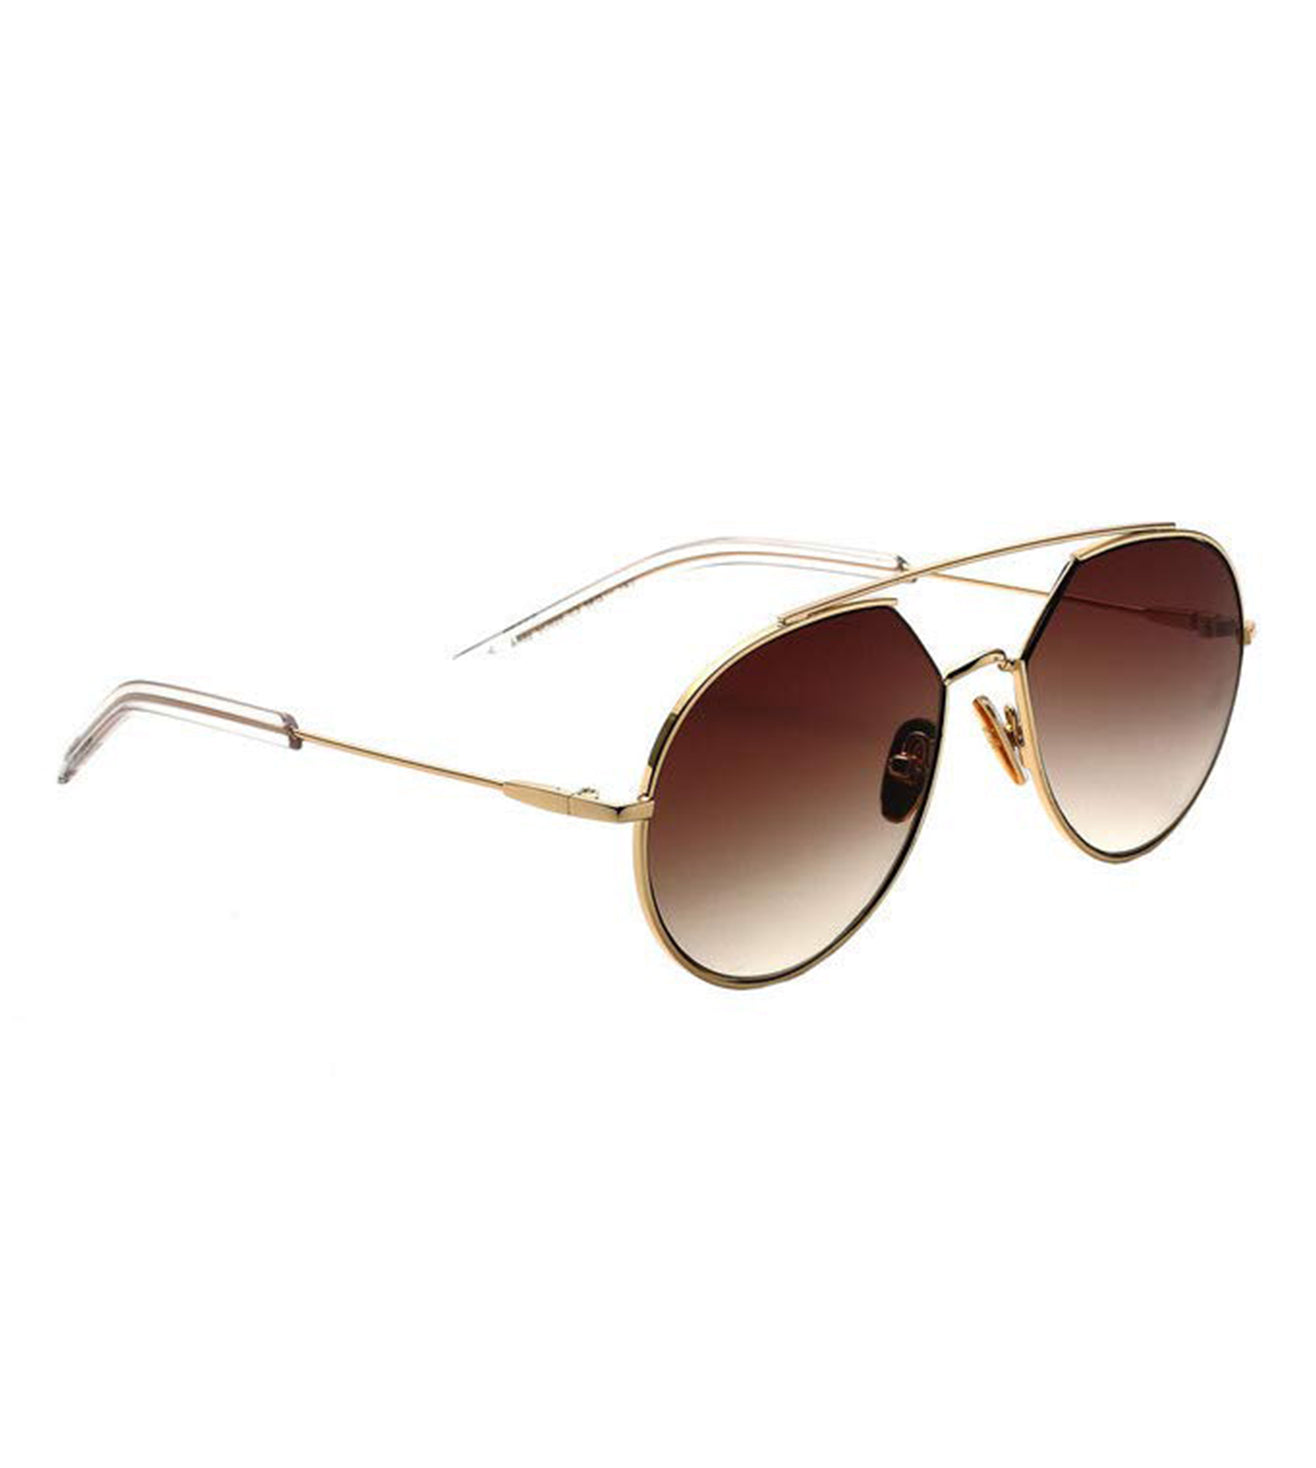 Scott Women's Brown Aviator Sunglasses